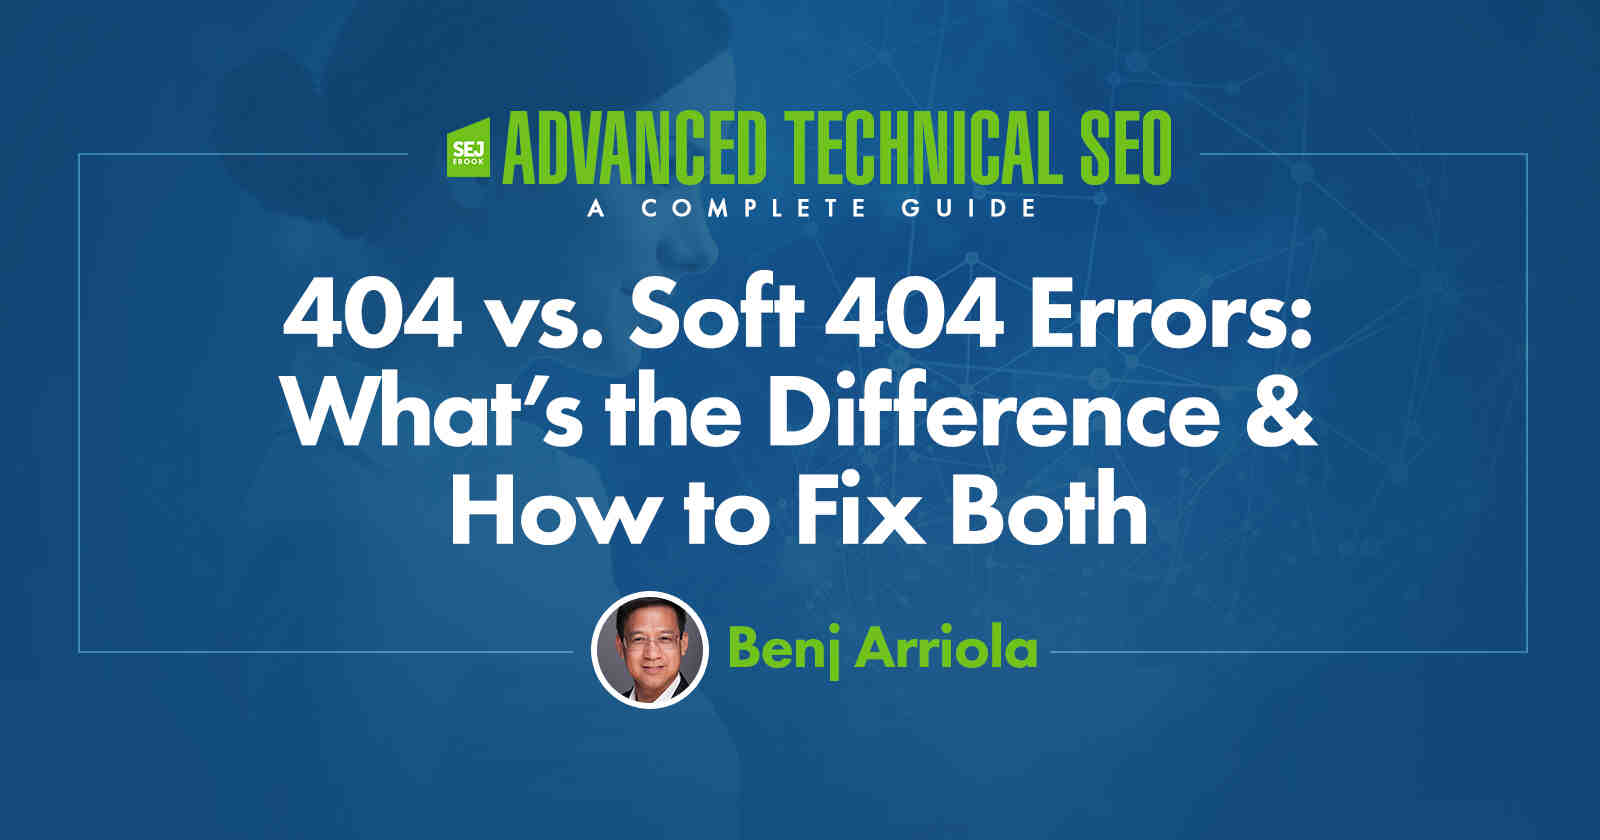 Comment réparer l'erreur 404 ?